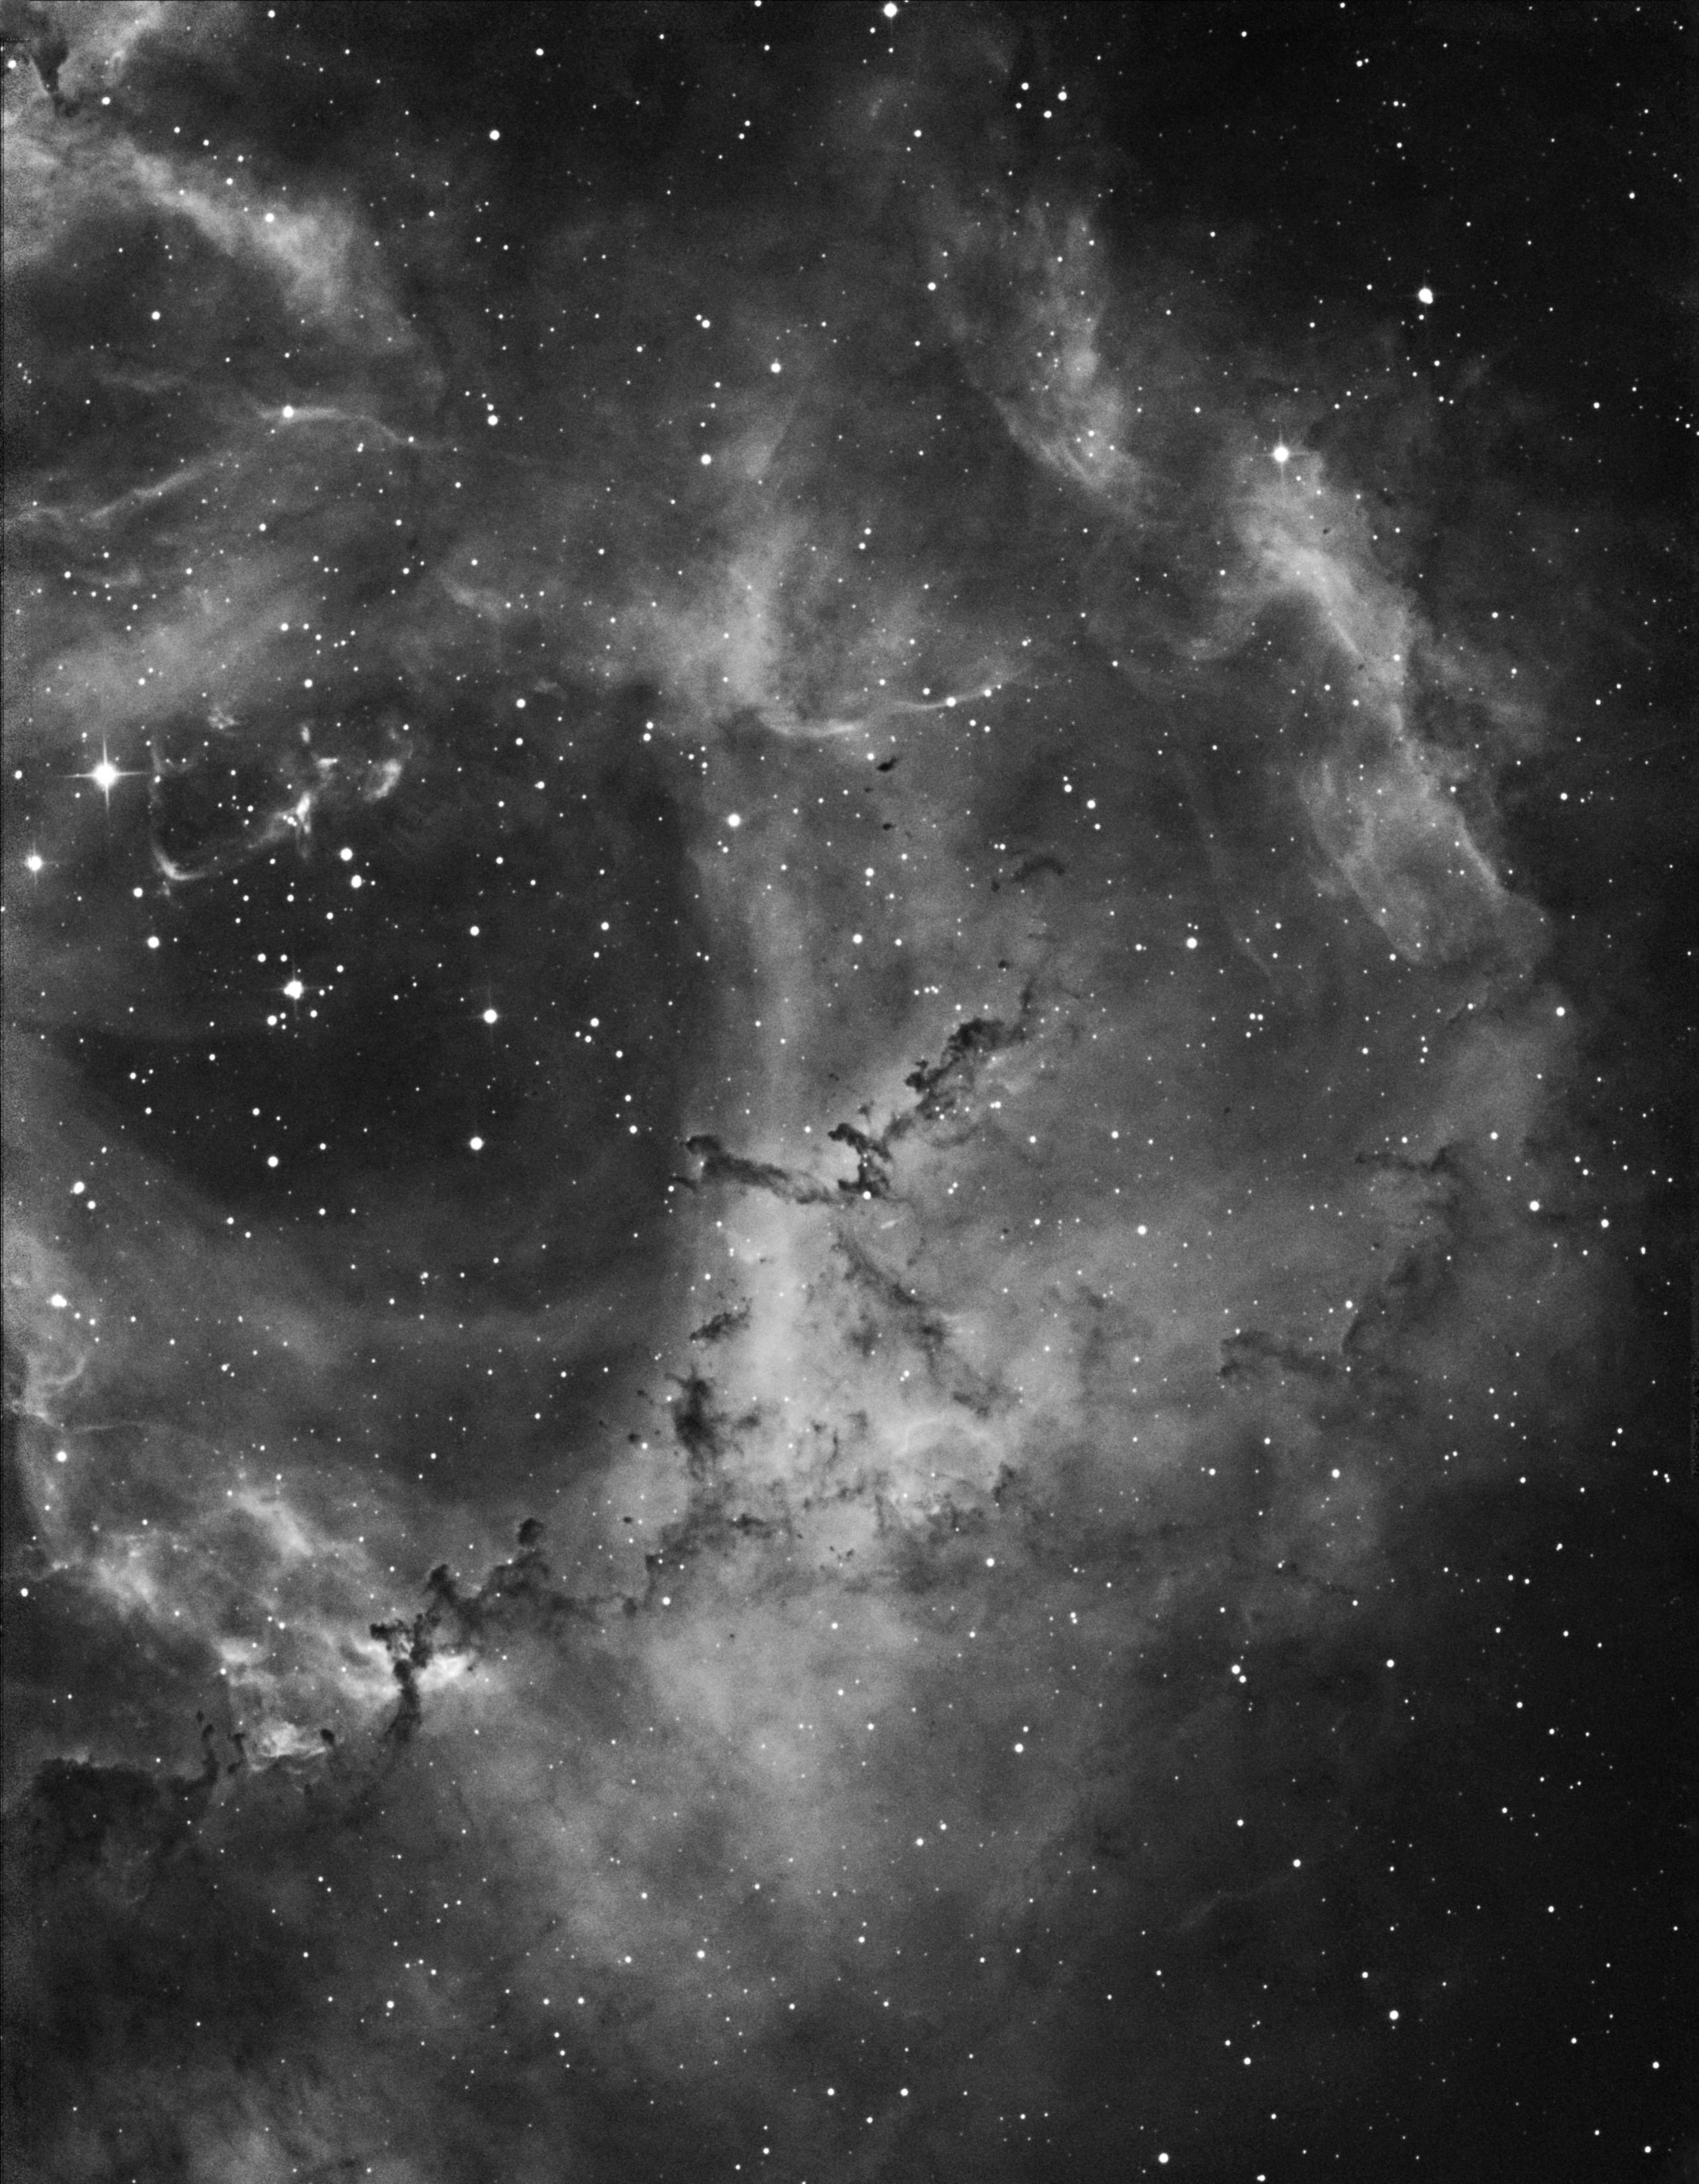 Details of the Rosette Nebula